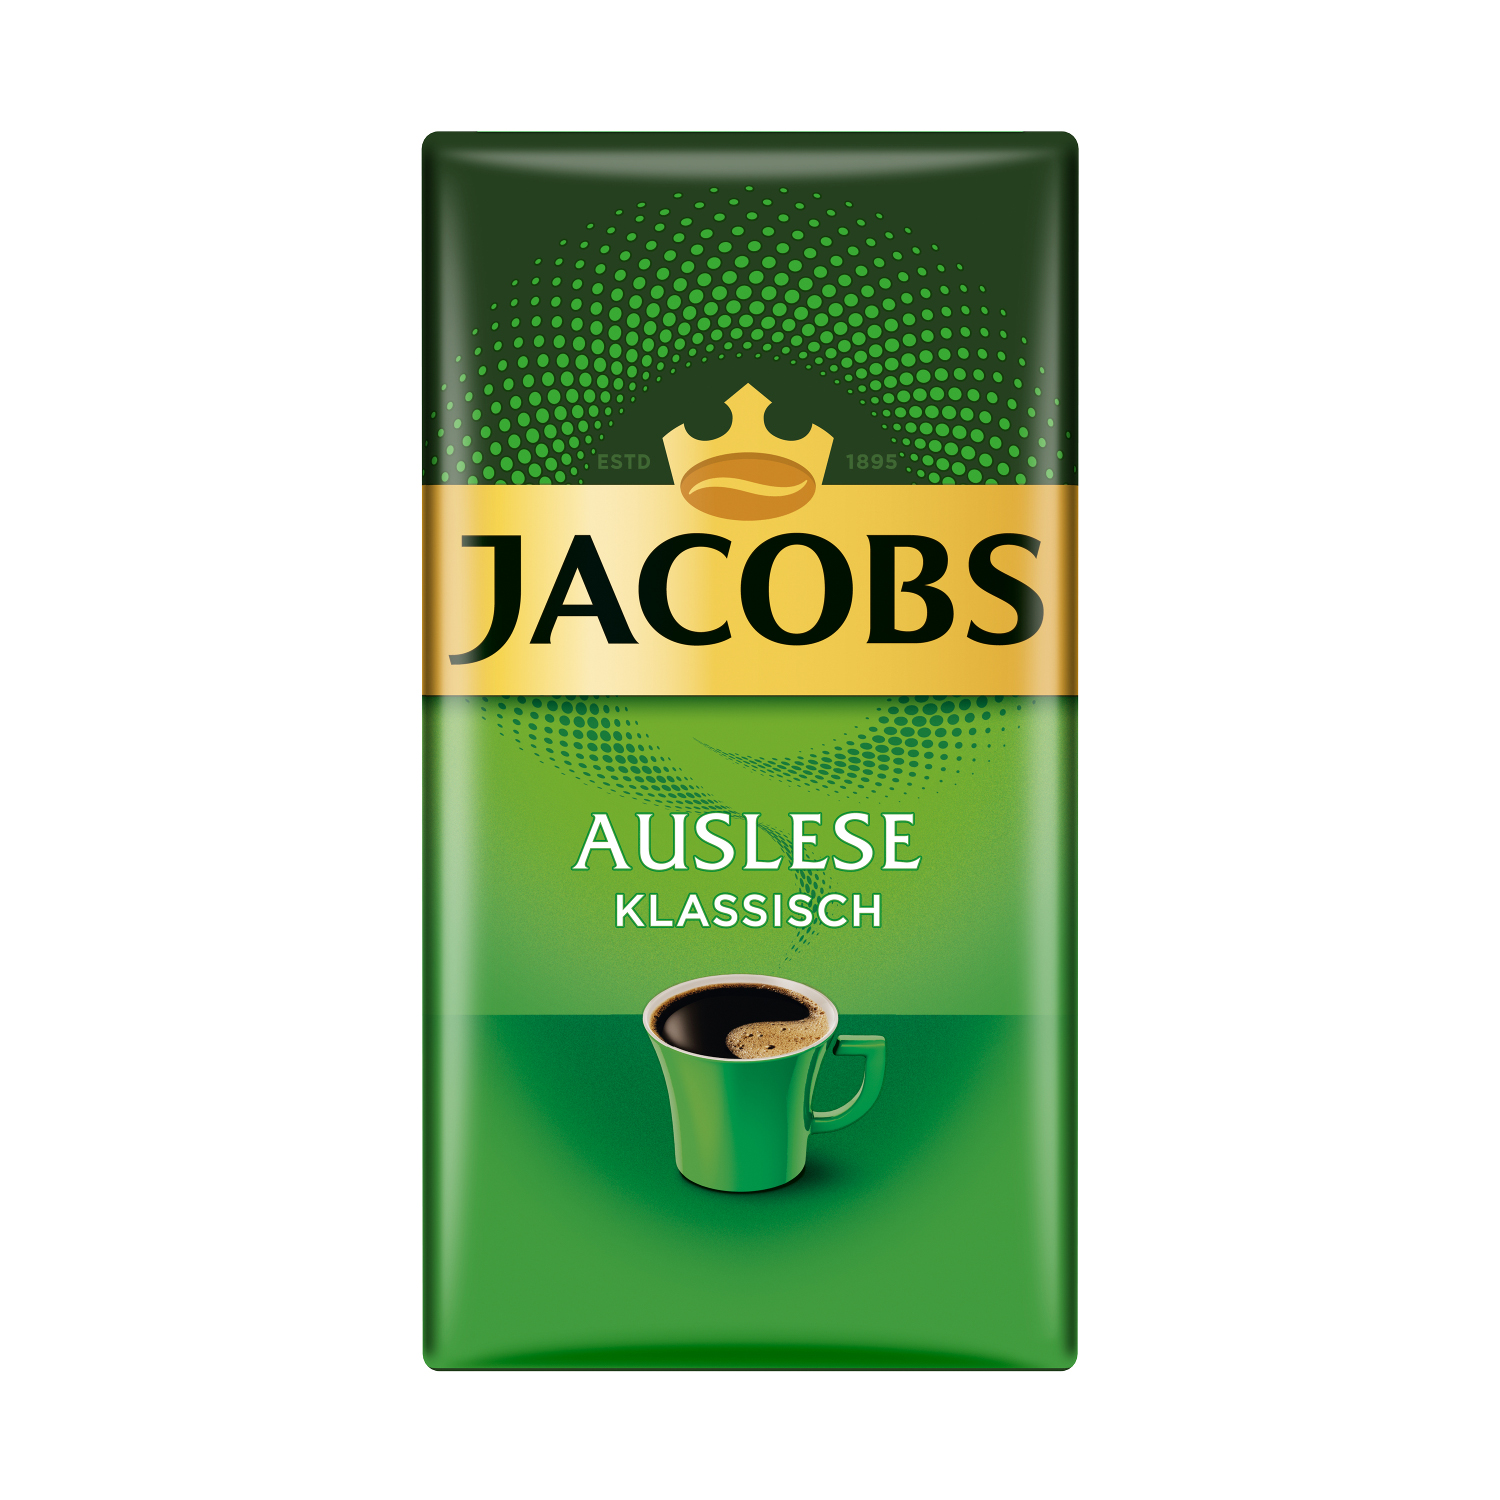 JACOBS + Auslese French + 1 Becher Filterkaffee x 8 Dose Press) Klassisch 500g 1 (Filtermaschinen,